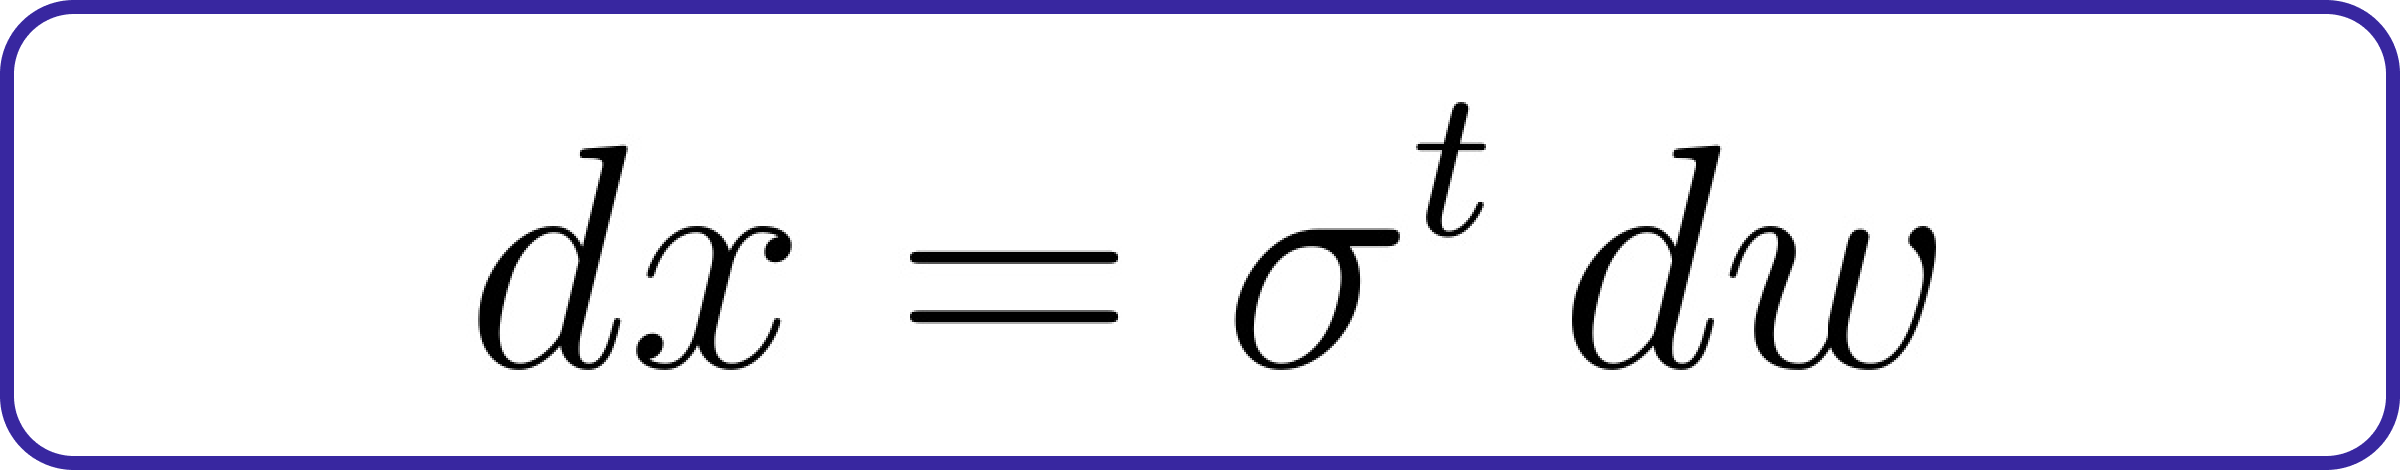 forward diffusion equation